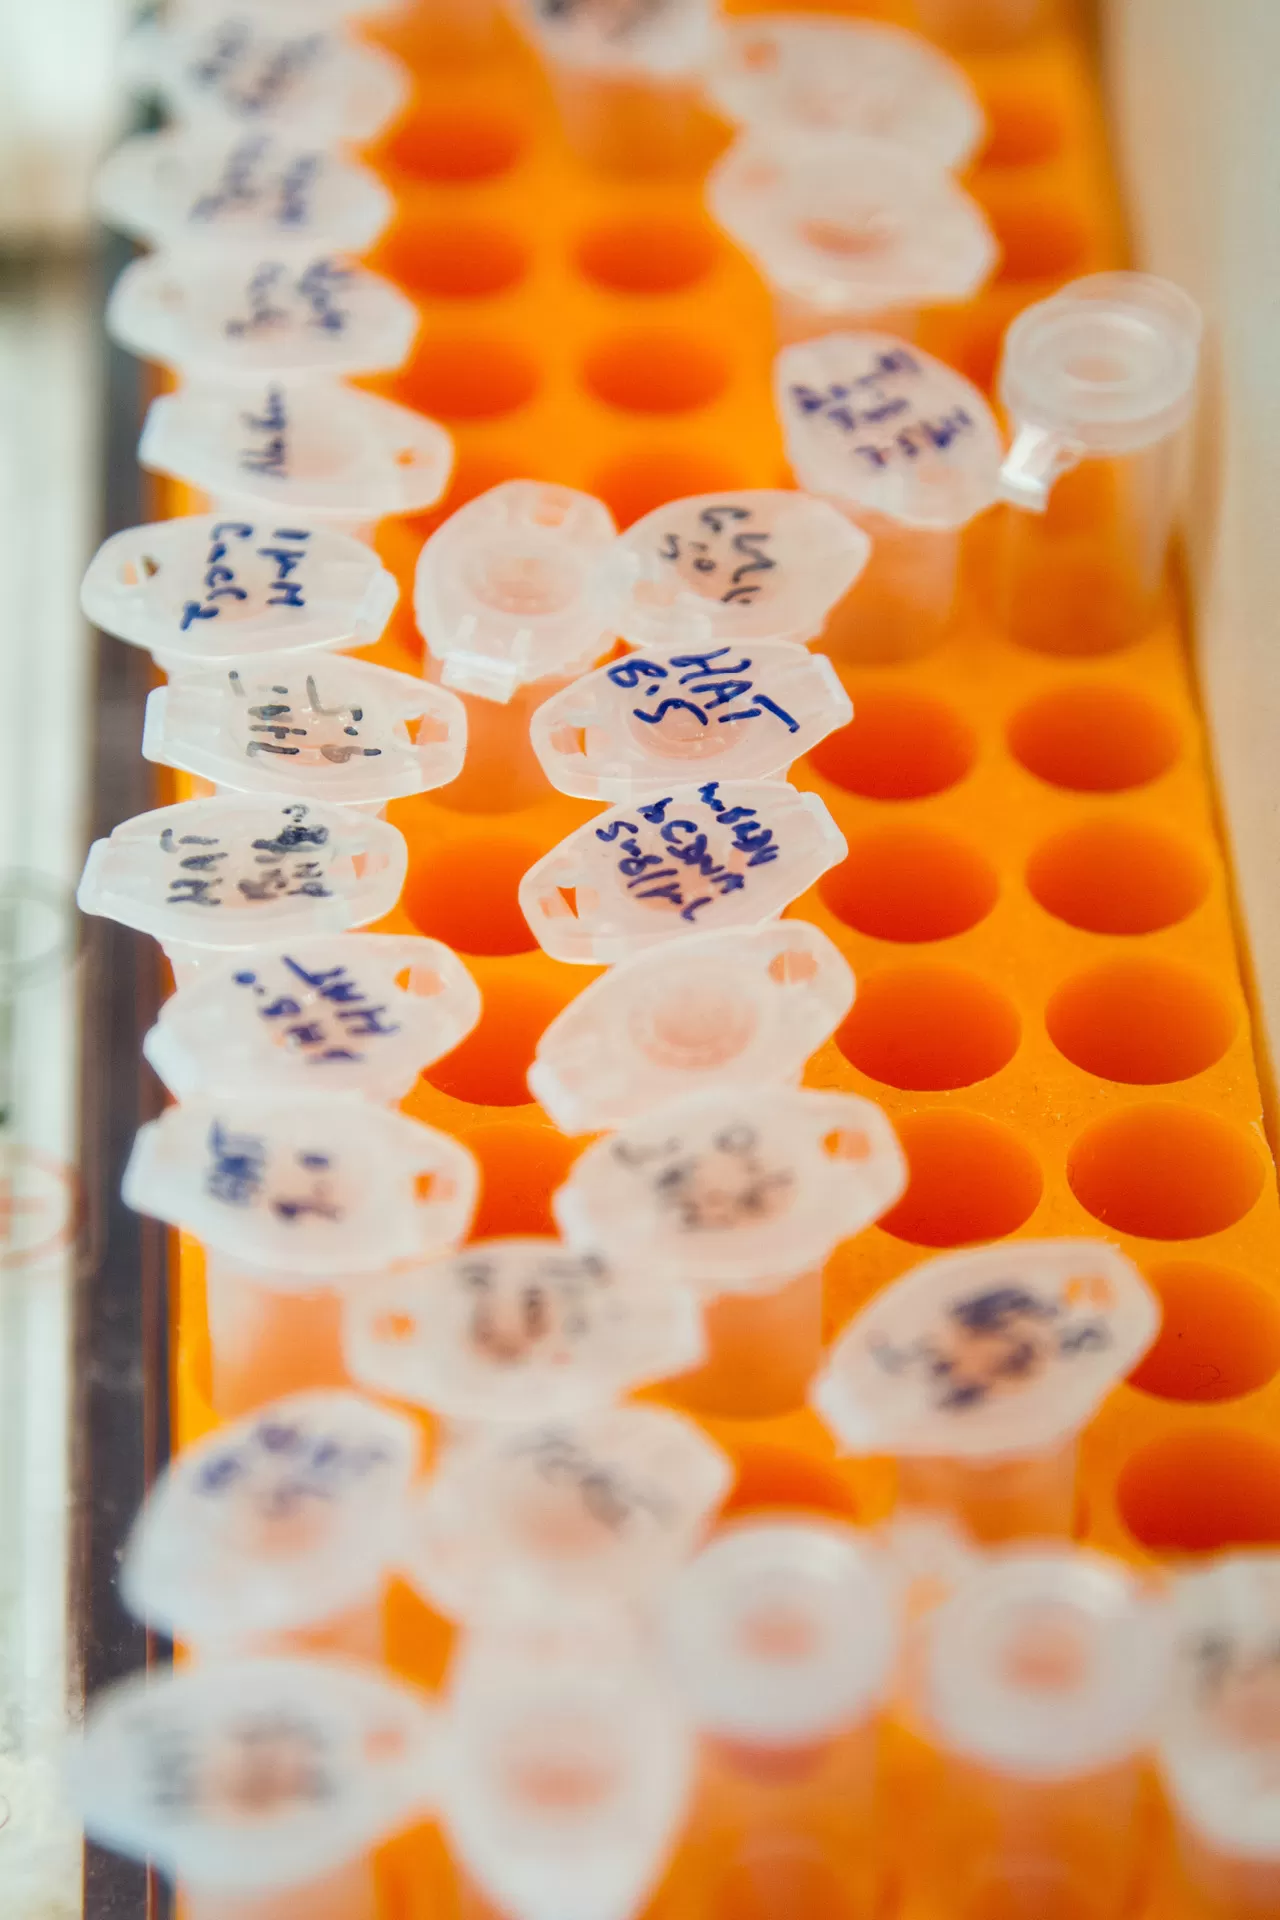 Mikrozentrifugenröhrchen mit DNA-Proben und Primer in einem Gestell.